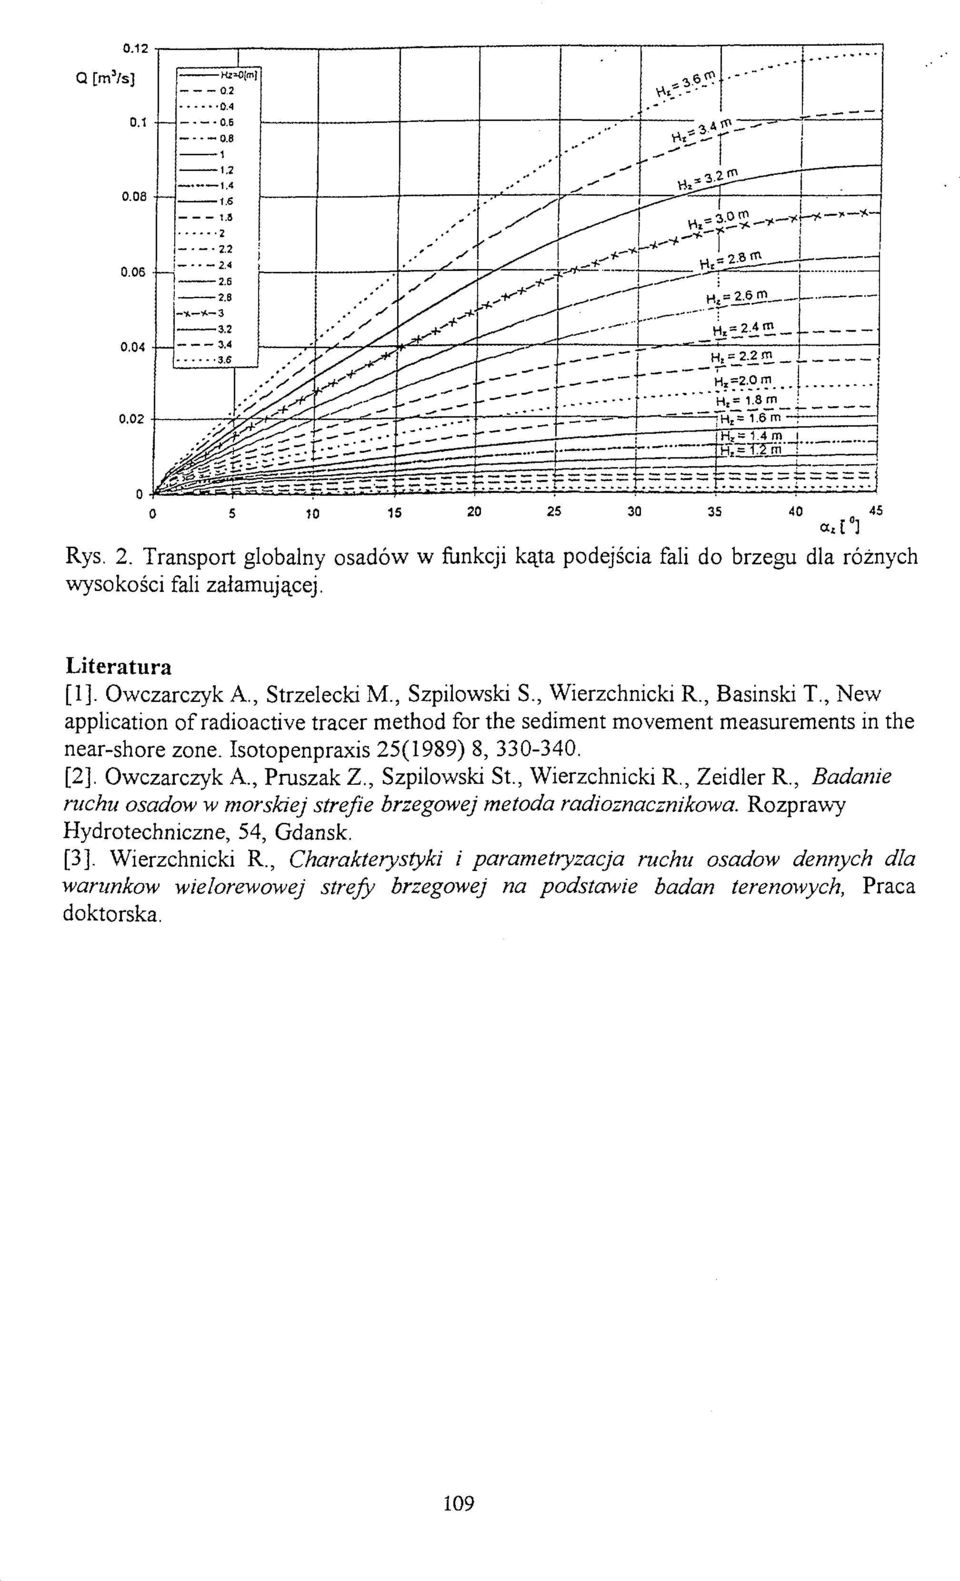 Isotopenpraxis 25(1989) 8, 330-340. [2]. Owczarczyk A., Pruszak Z., Szpilowski St., Wierzchnicki R., Zeidler R.